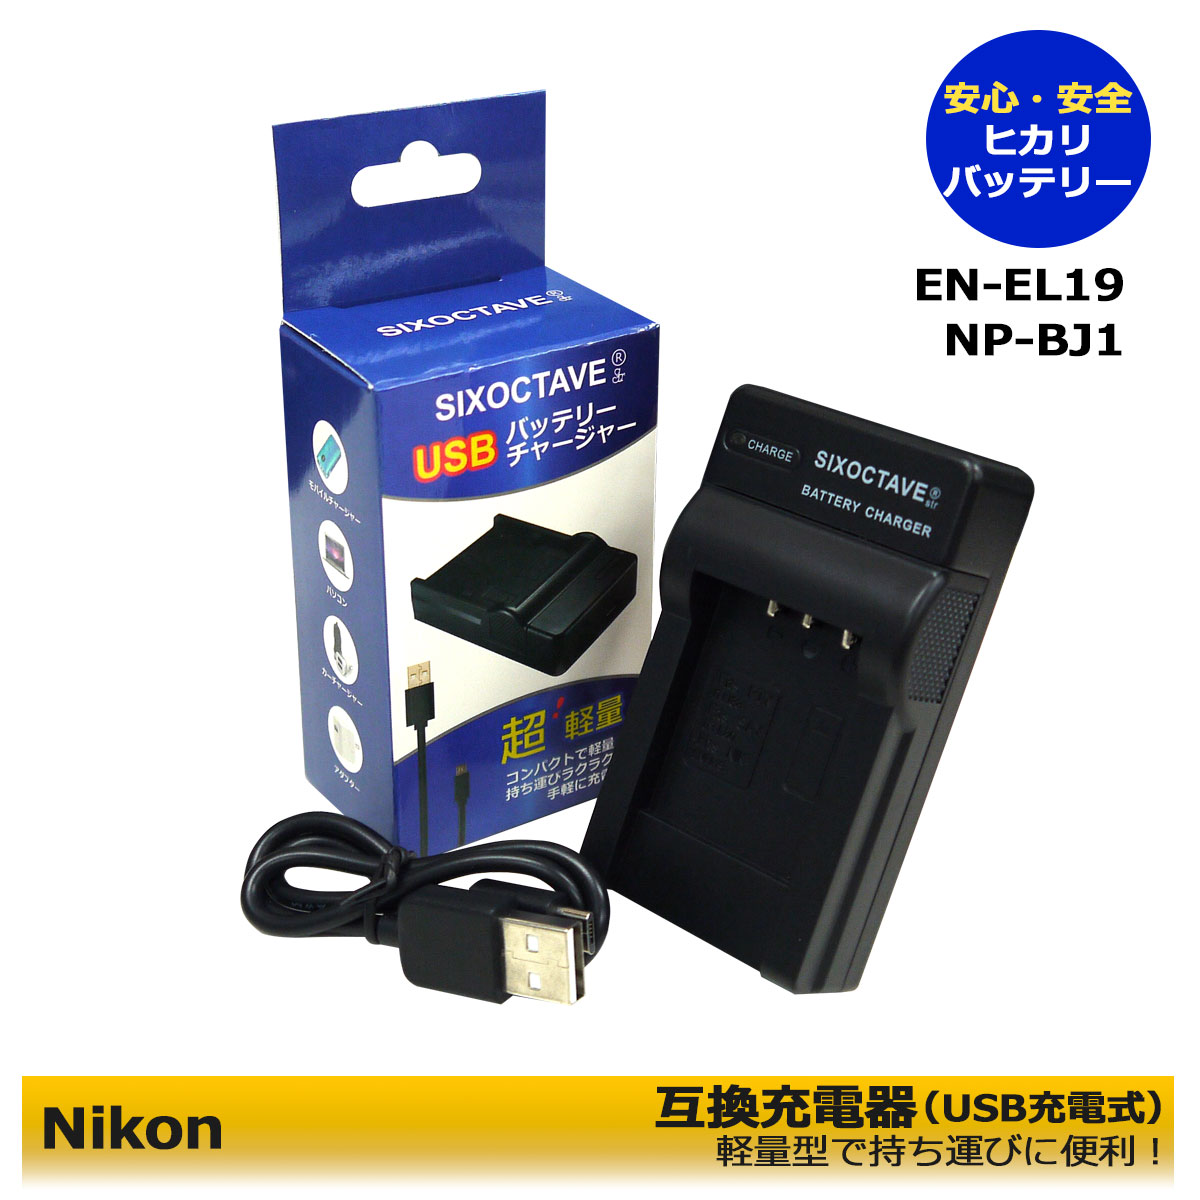 ニコン EN-EL19 ENEL19 Micro USB付き 急速充電器 互換品